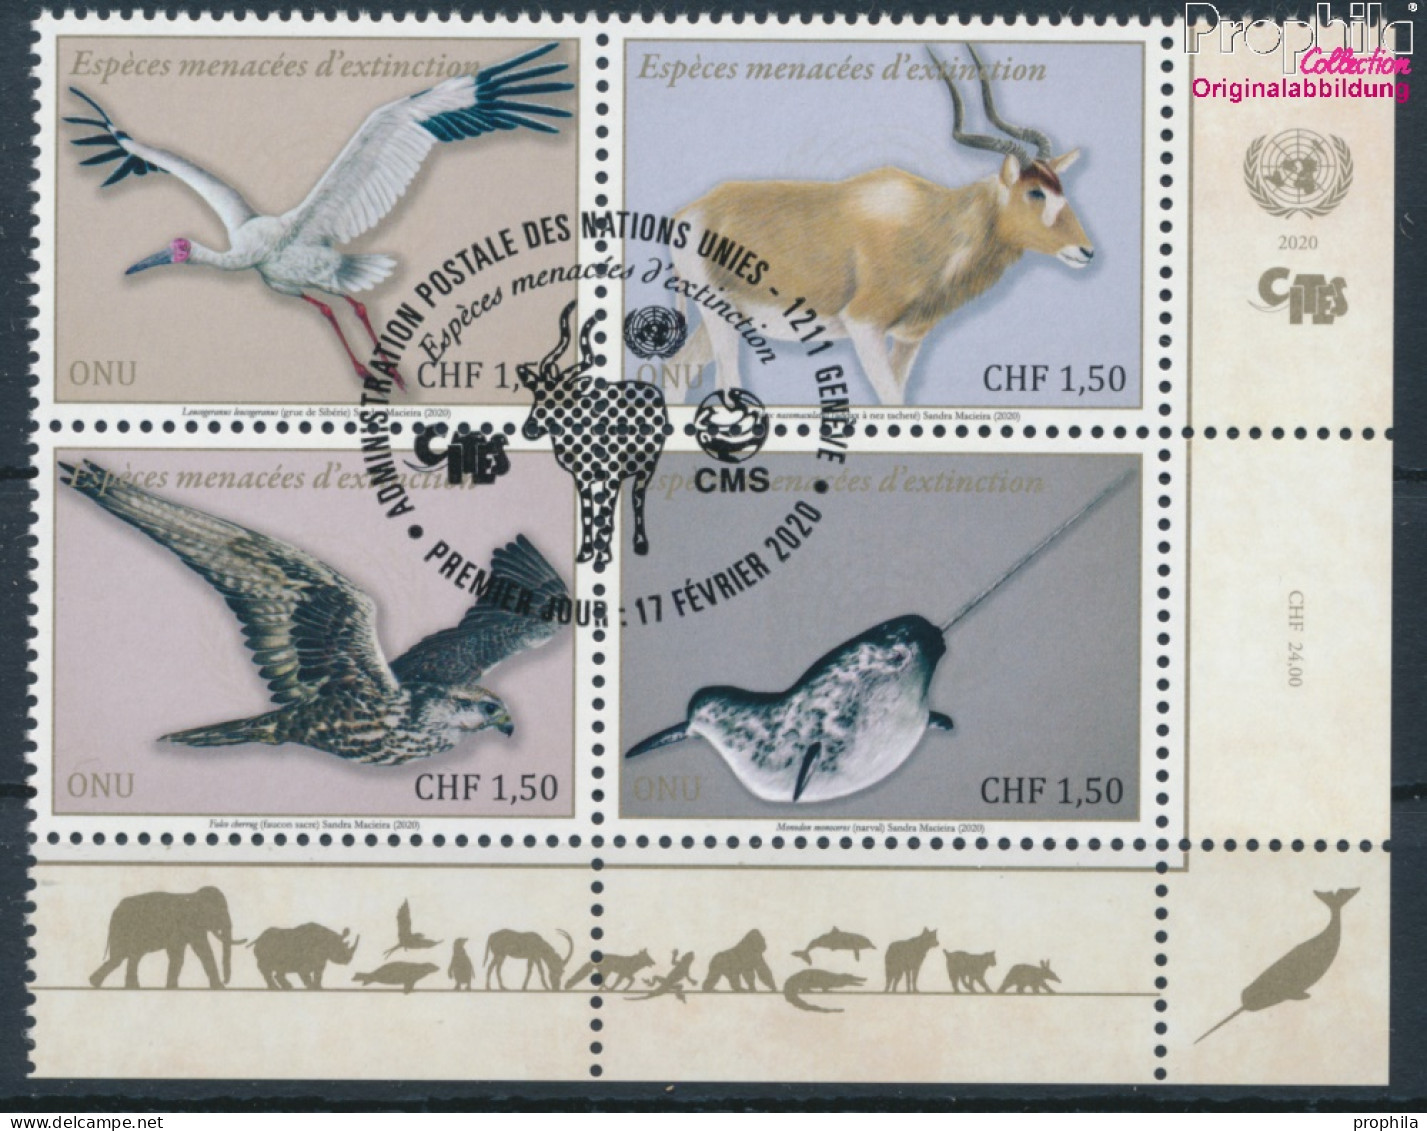 UNO - Genf 1106-1109 Viererblock (kompl.Ausg.) Gestempelt 2020 Gefährdete Arten (10194003 - Used Stamps